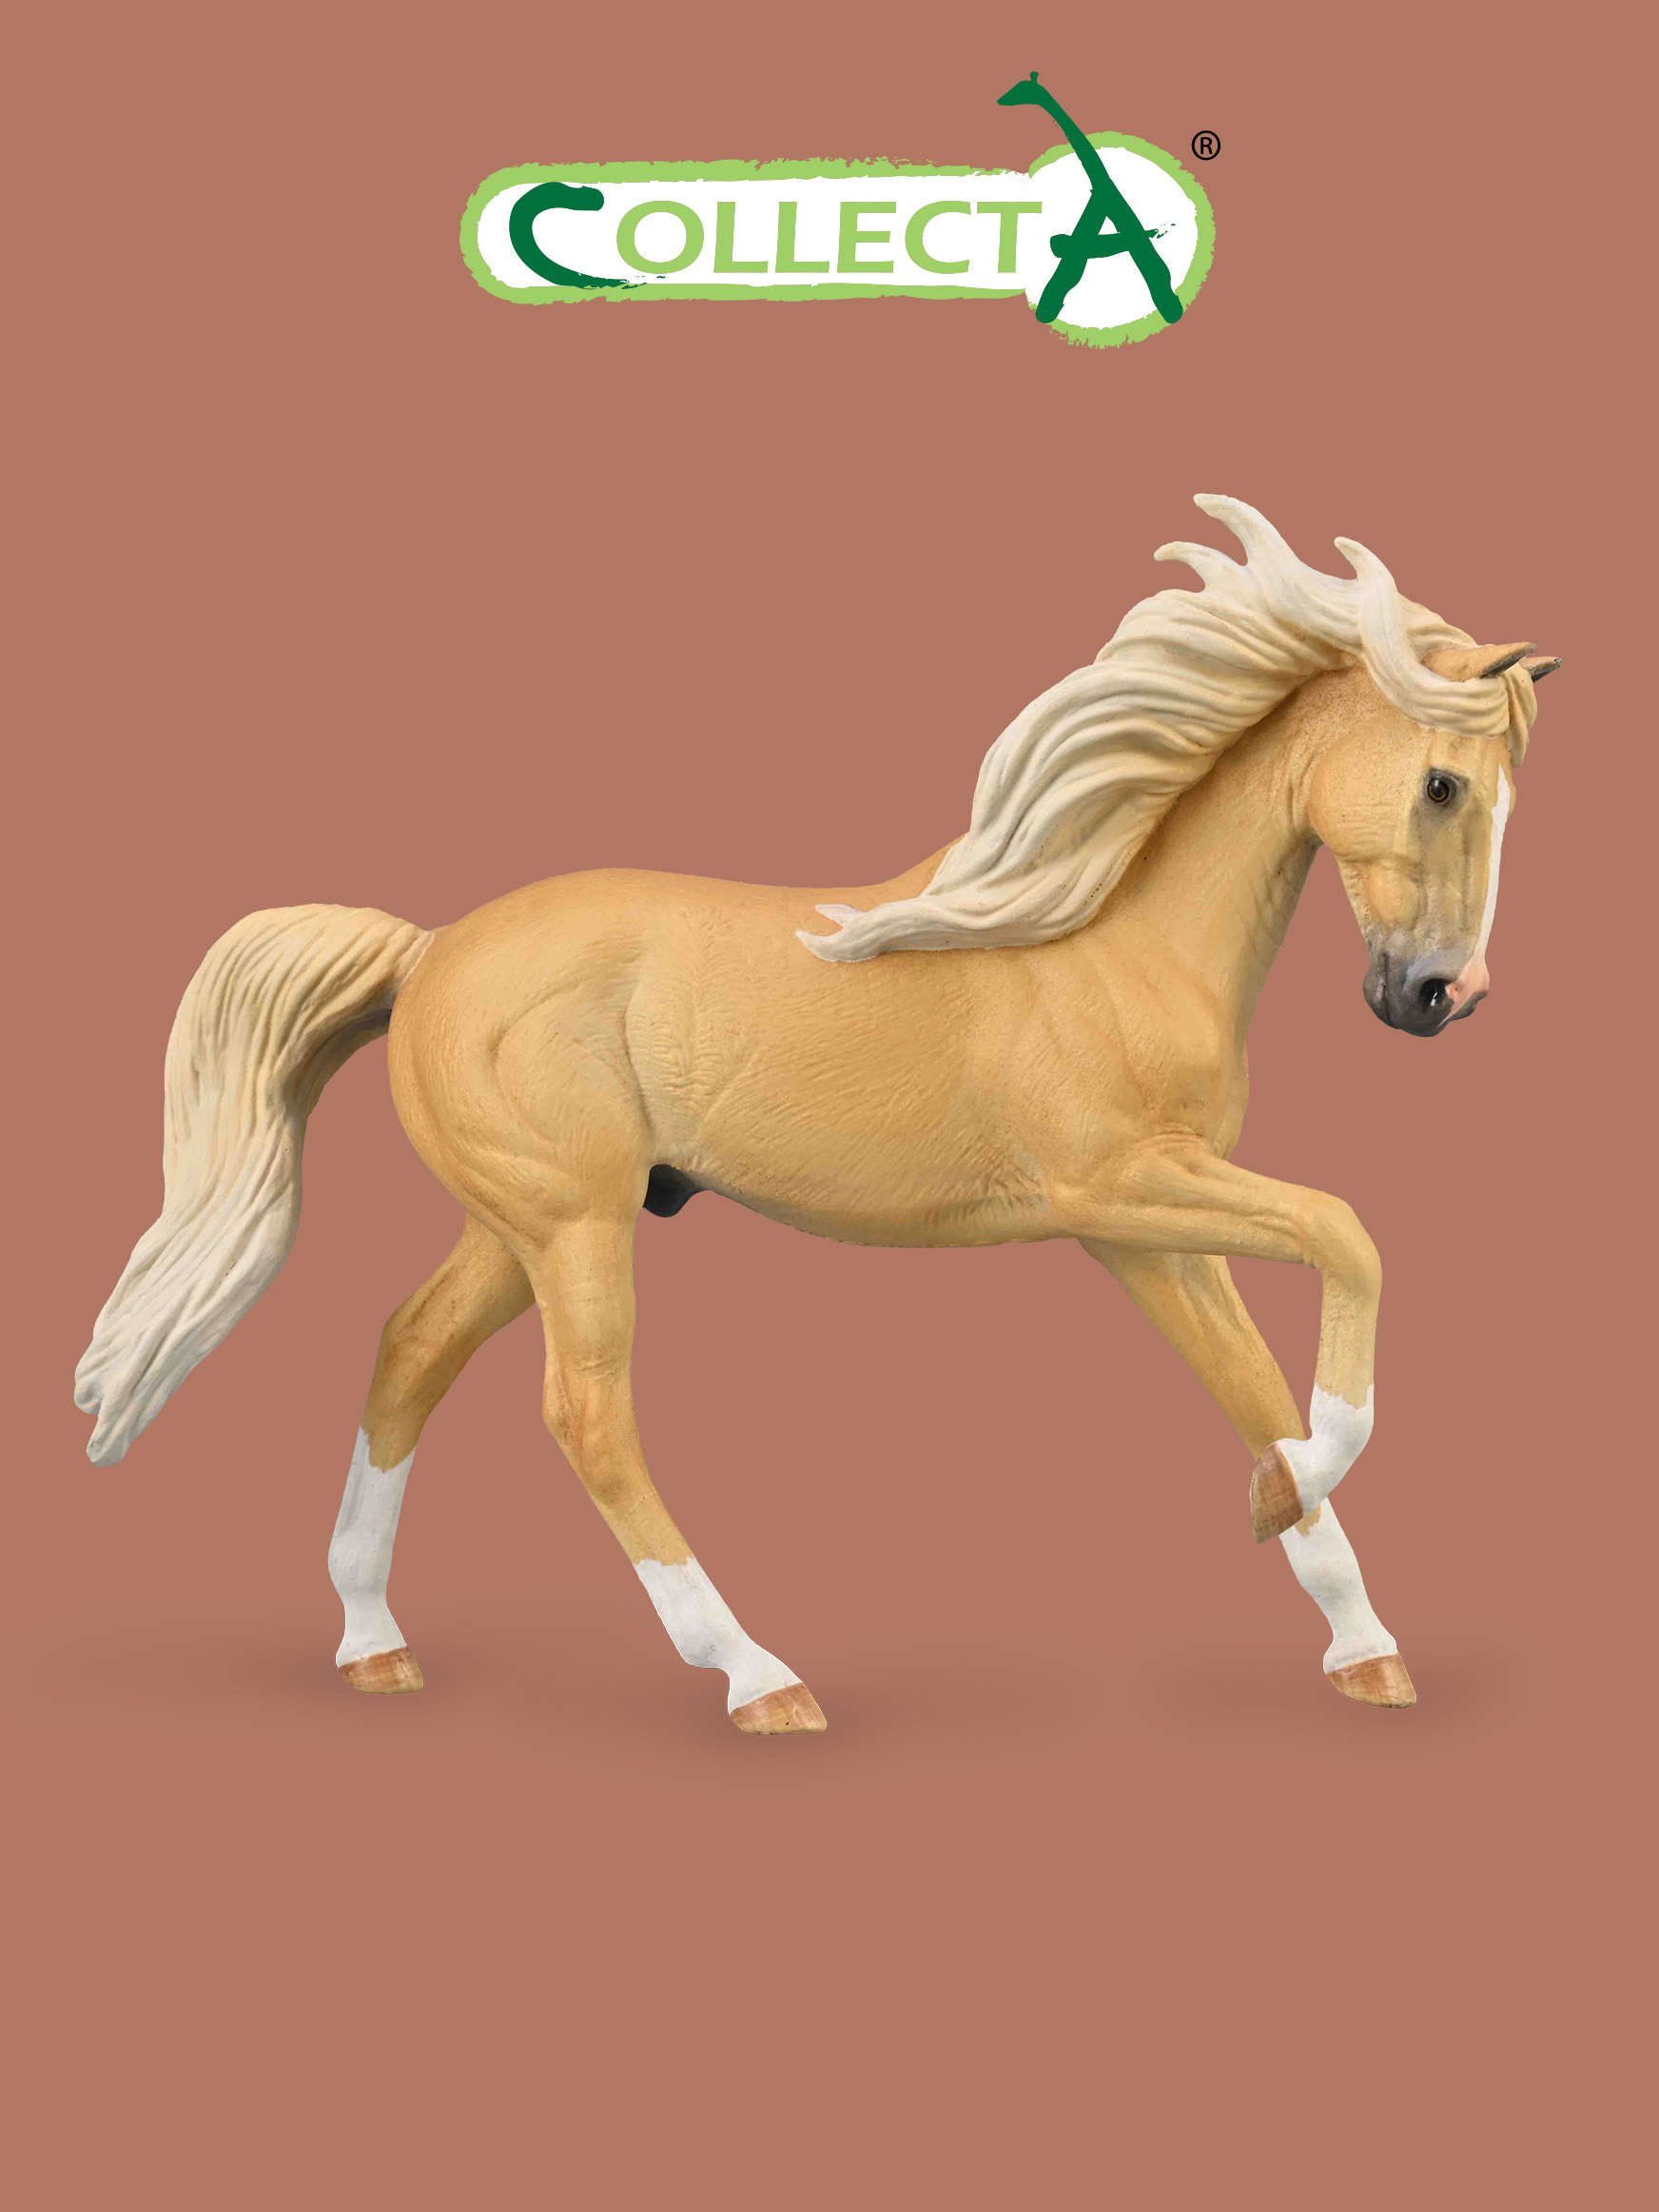 Фигурка Collecta животного Лошадь Андалузский жеребец - Паломино collecta фигурка американская кремовая лошадь xl